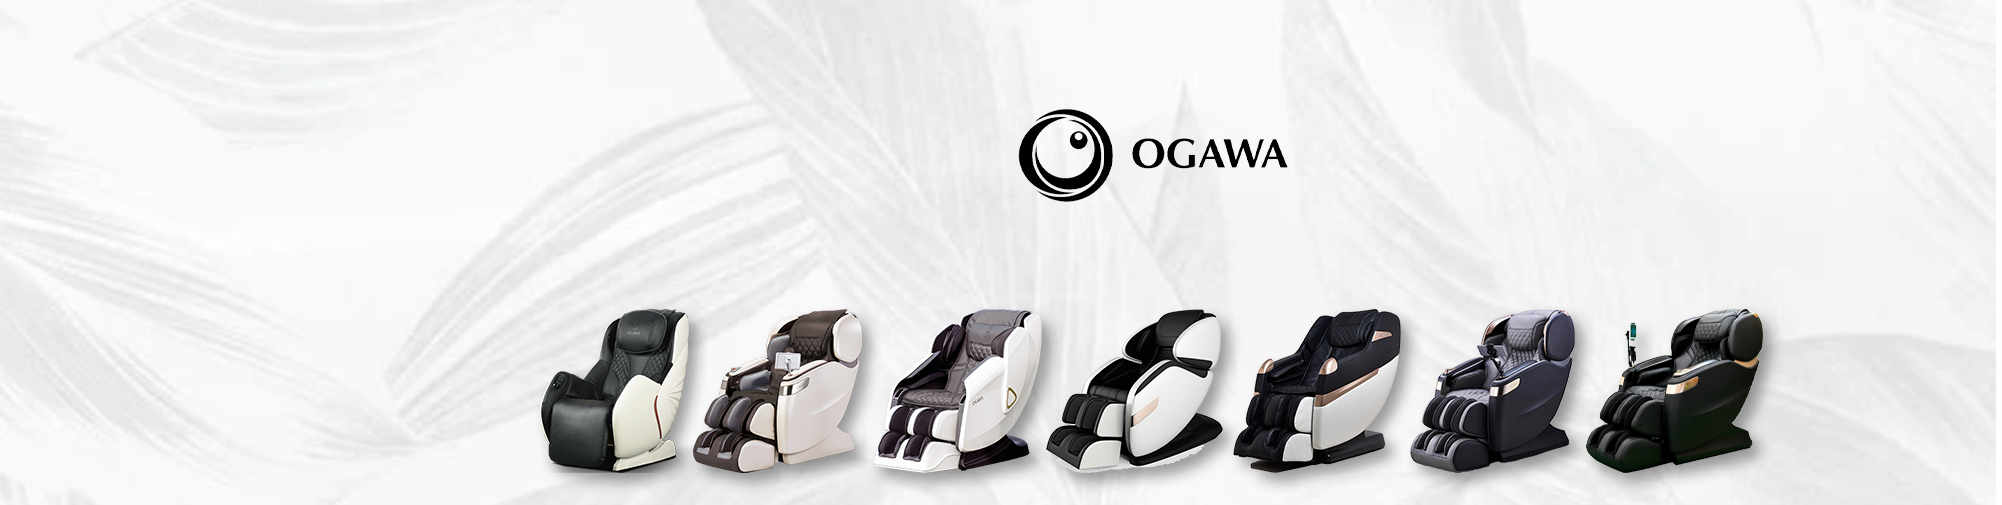 OGAWA | Svijet stolica za masažu